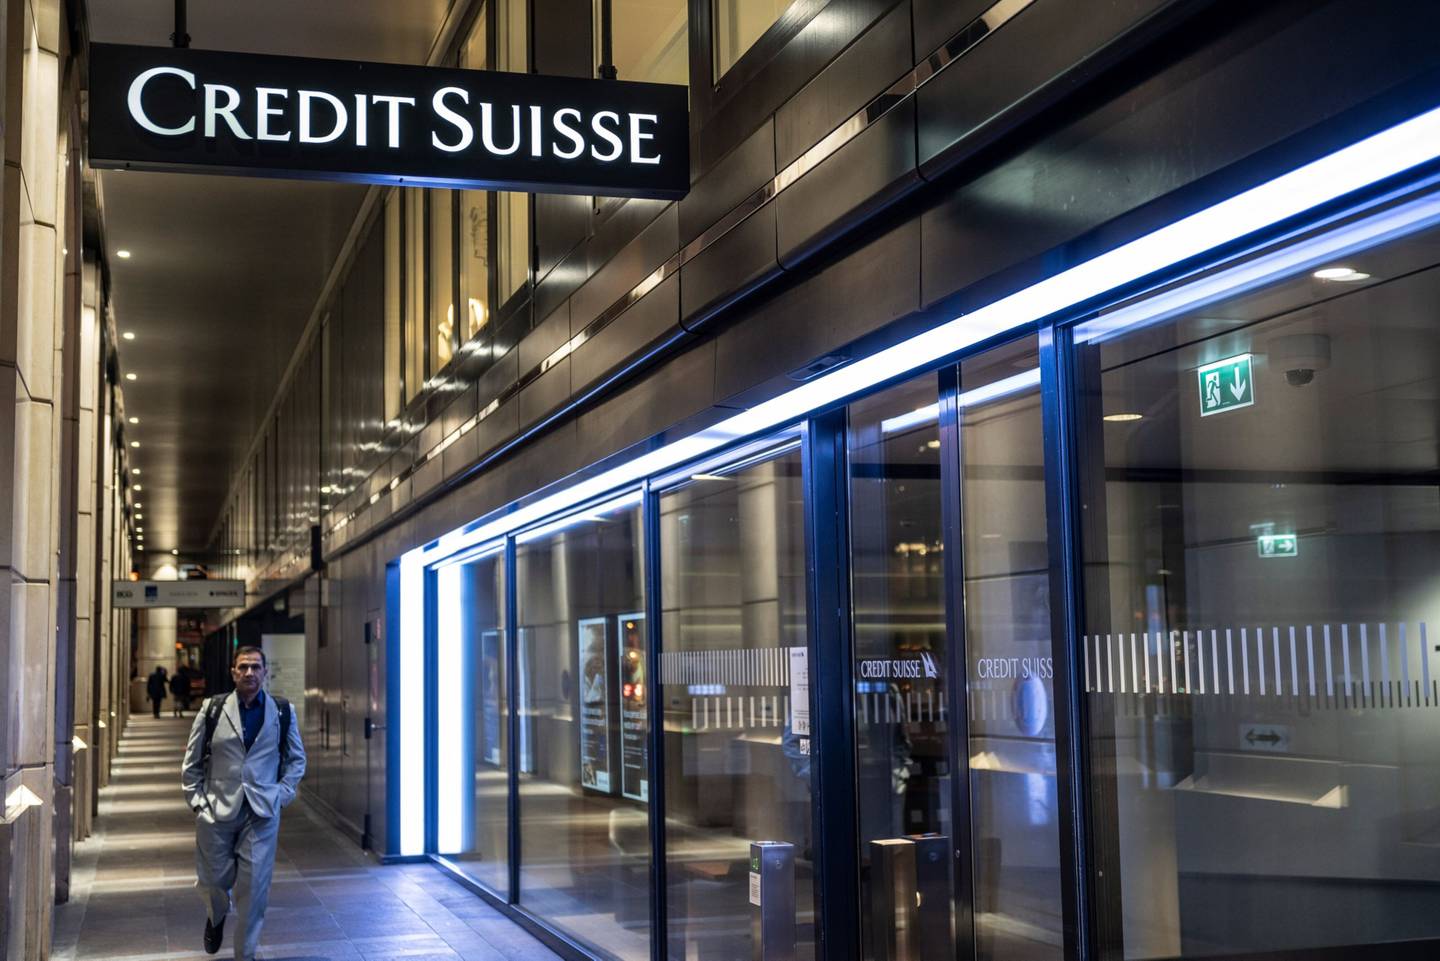 El apoyo del banco central suizo impulsa la subida de Credit Suisse y otros bancos del sector